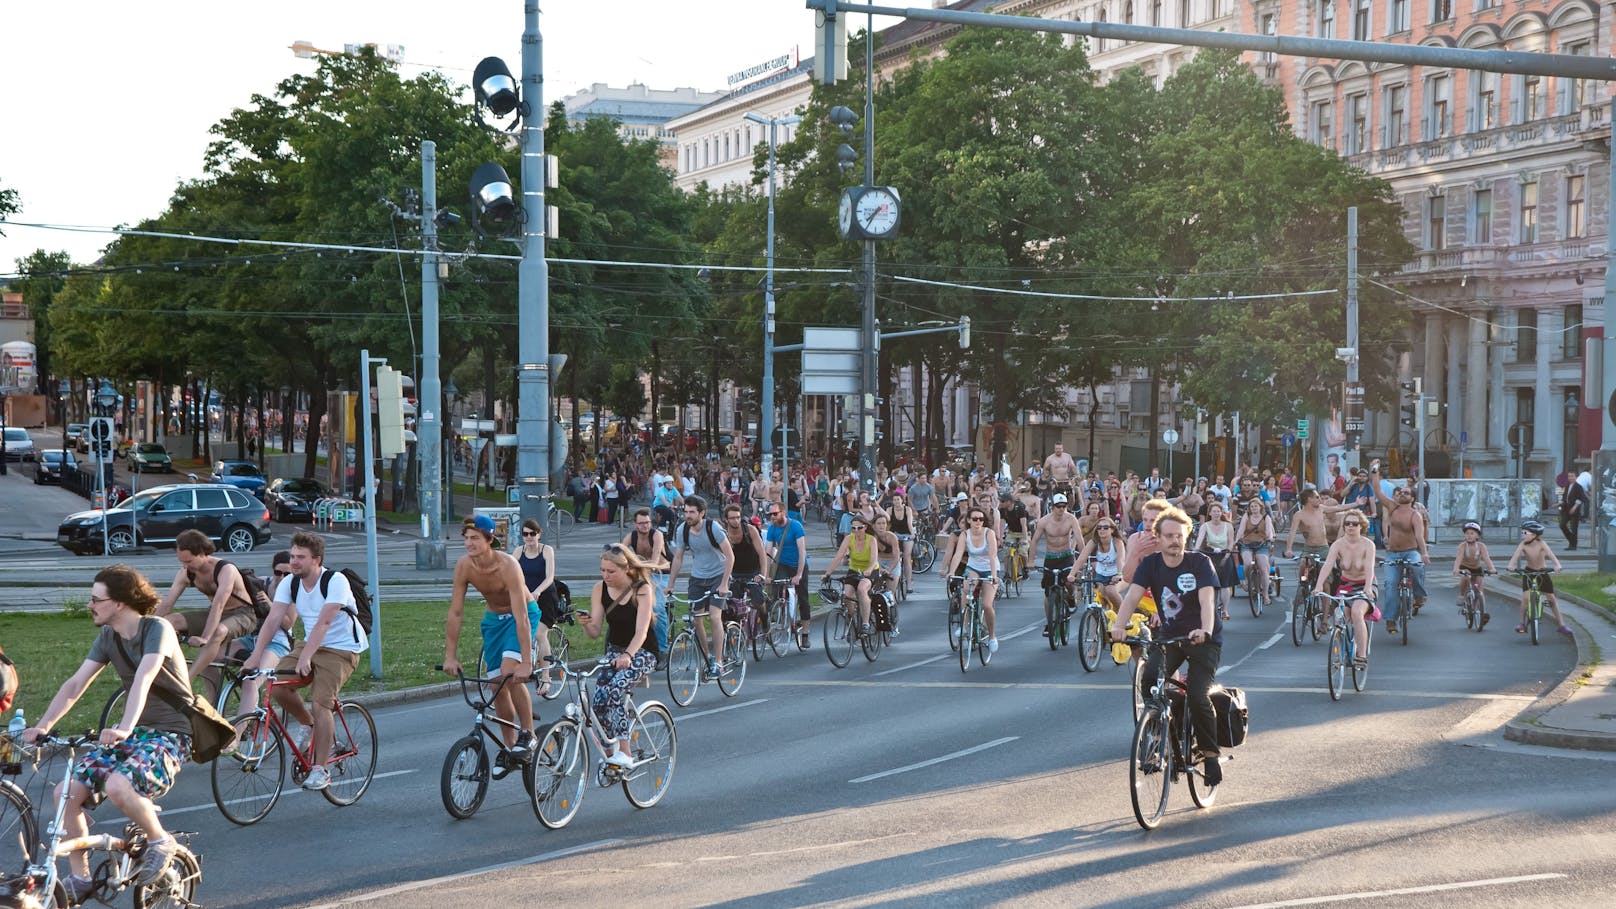 Am Samstag gehört der Wiener Gürtel den Radfahrern